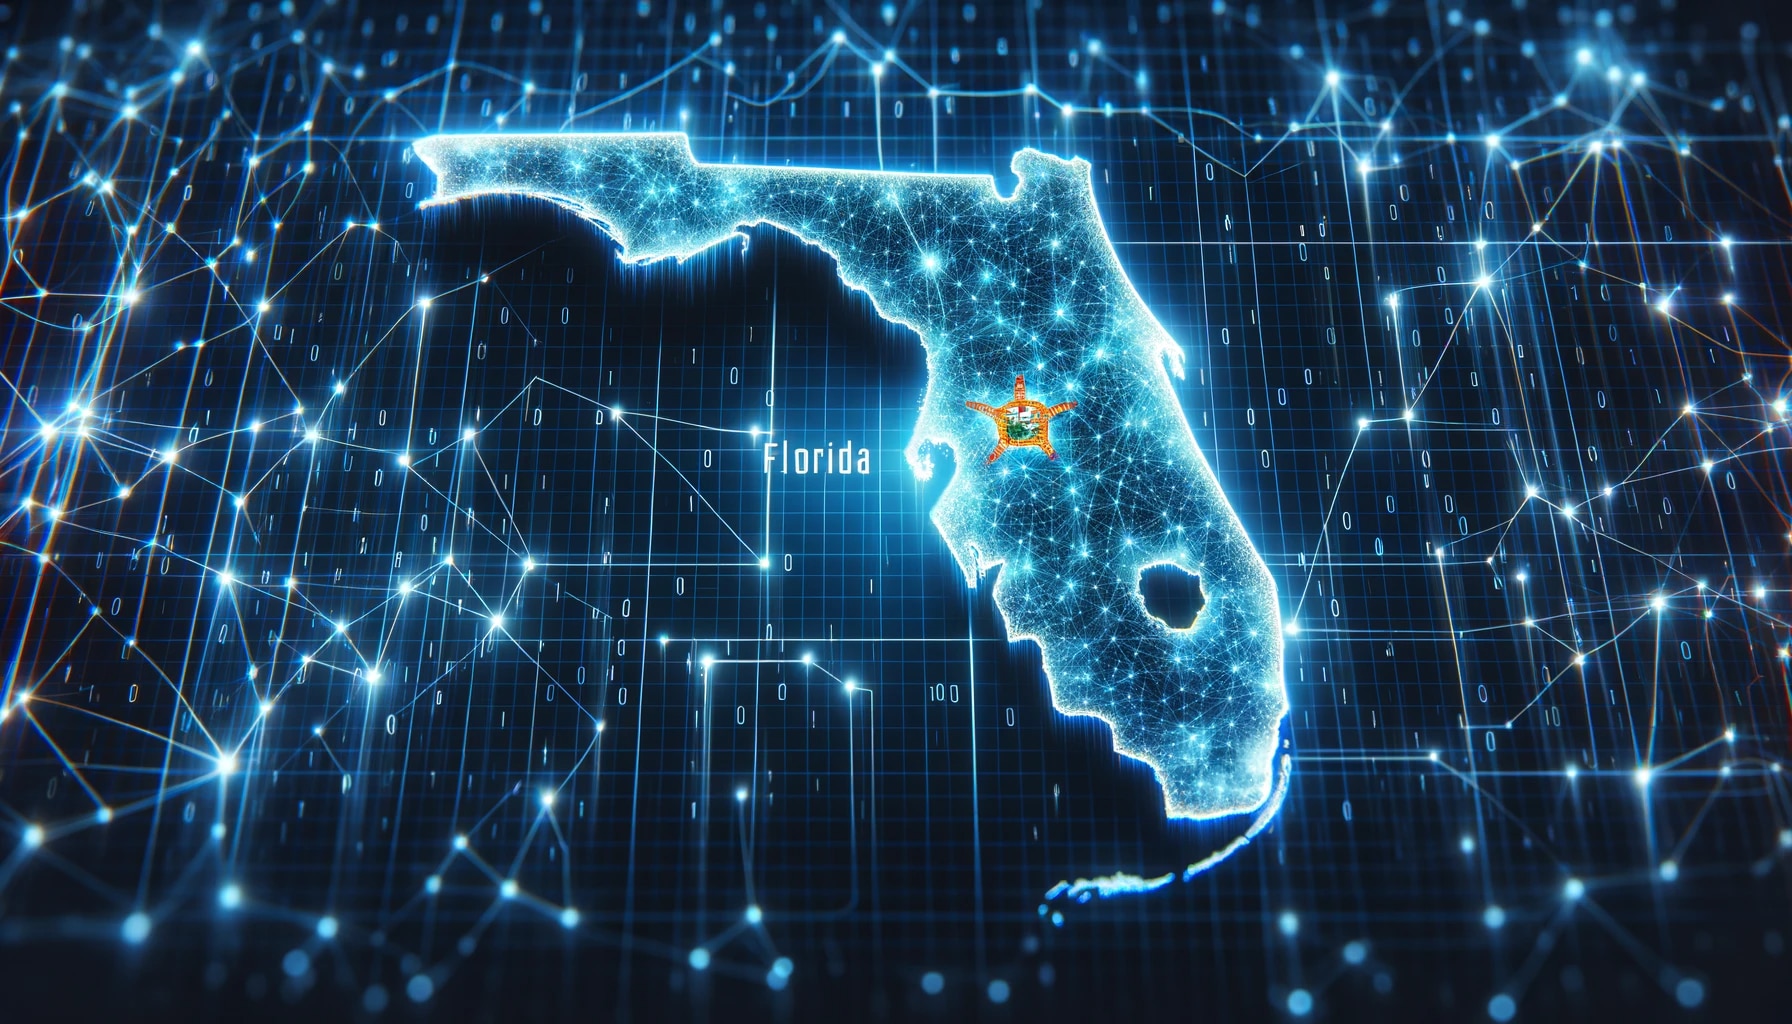 La transformación digital avanza a pasos agigantados en Estados Unidos, y Florida se destaca por su activa participación en búsquedas relacionadas con la IA. (Imagen ilustrativa Infobae)